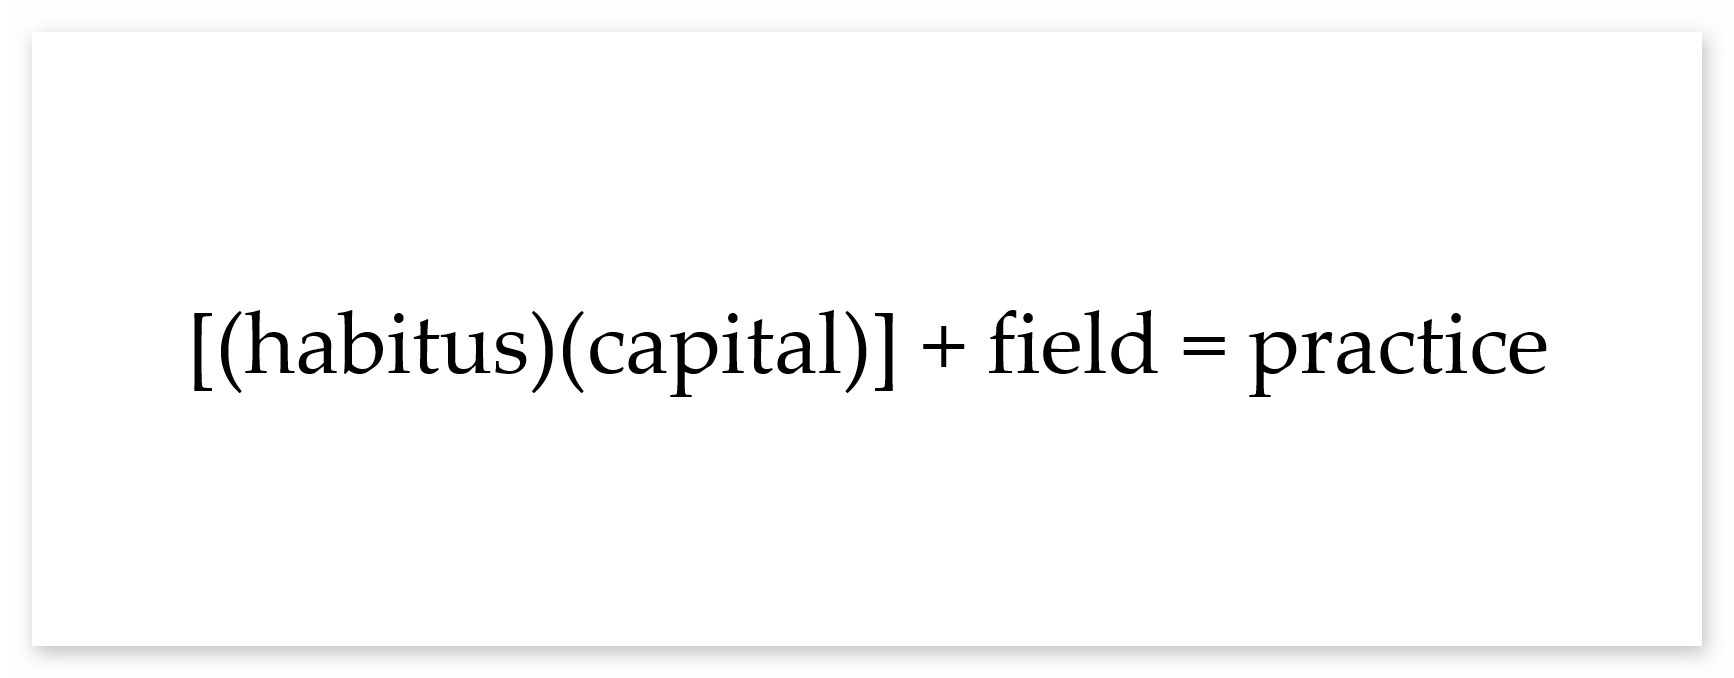 habitus-capital-field